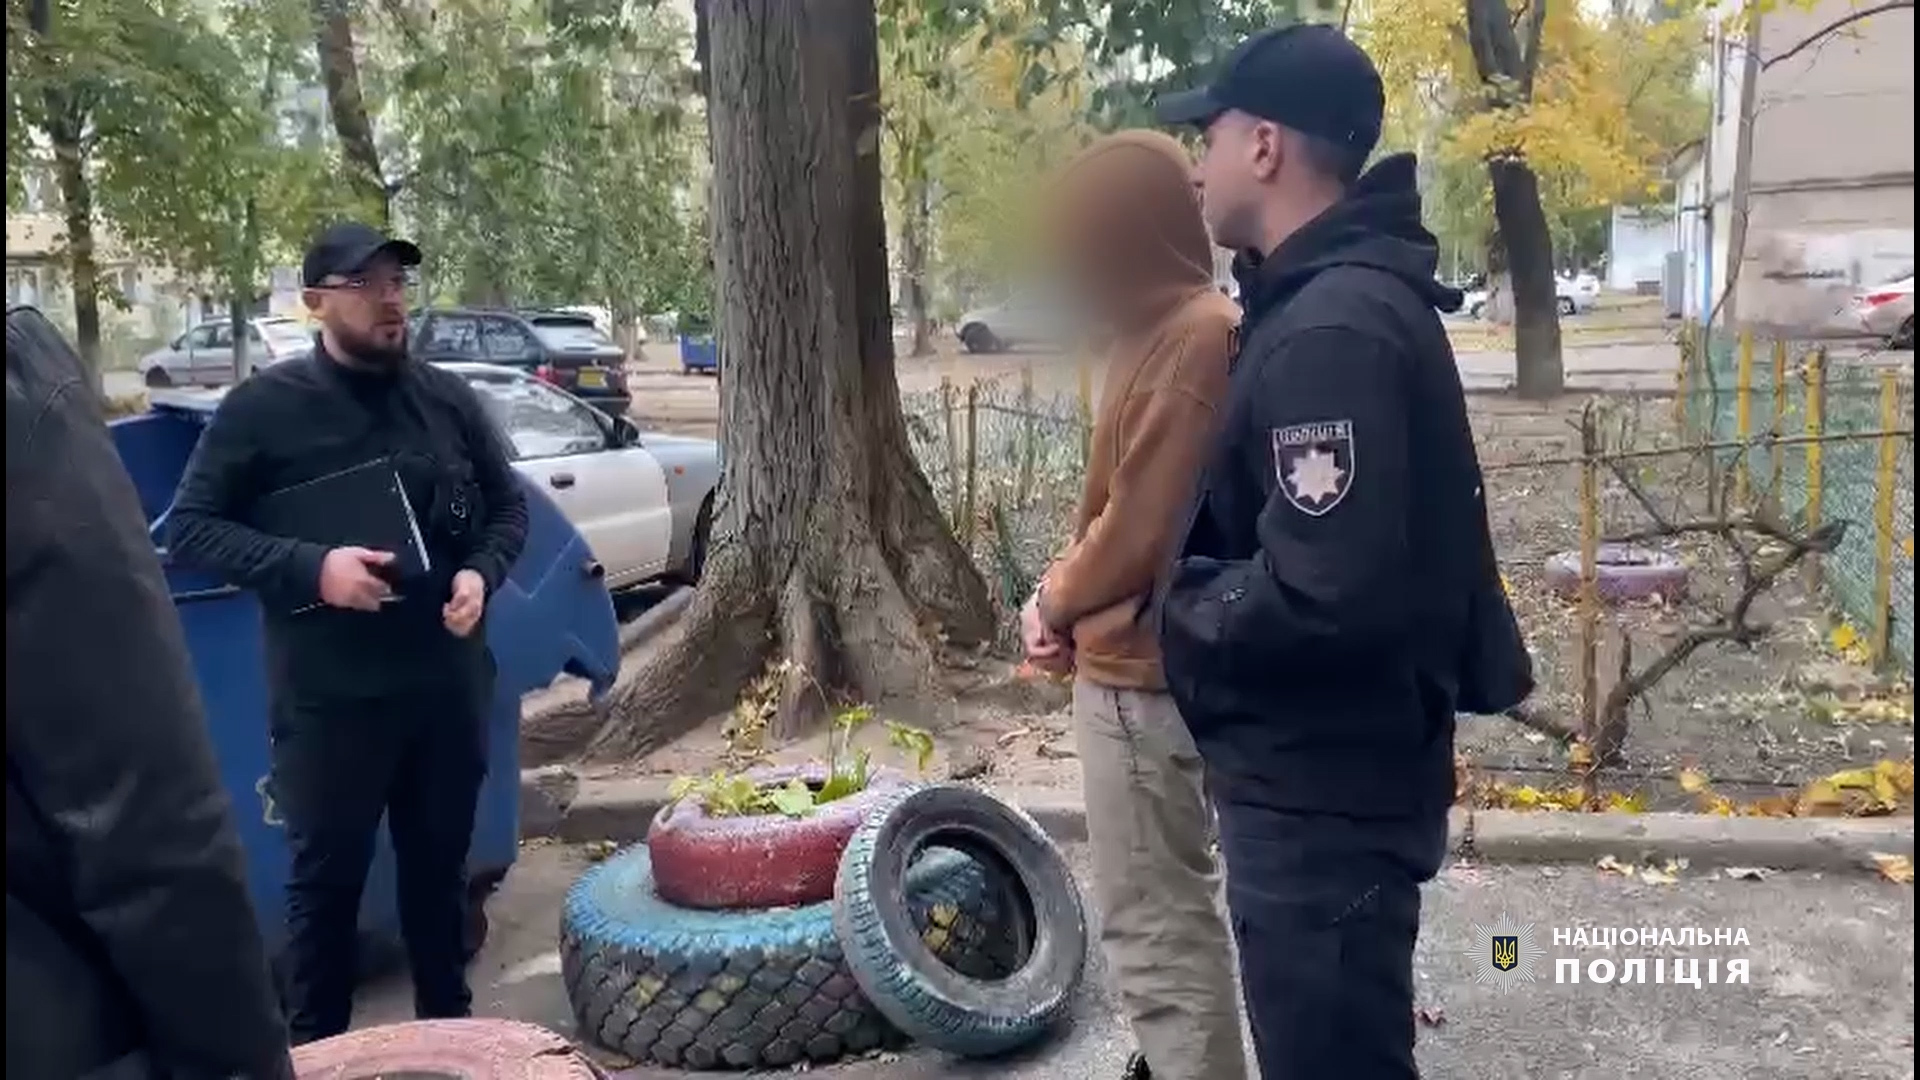 Поліція: Затримано "Путіна" та його банду, кримінальники підпалювали квартири – відео, фото